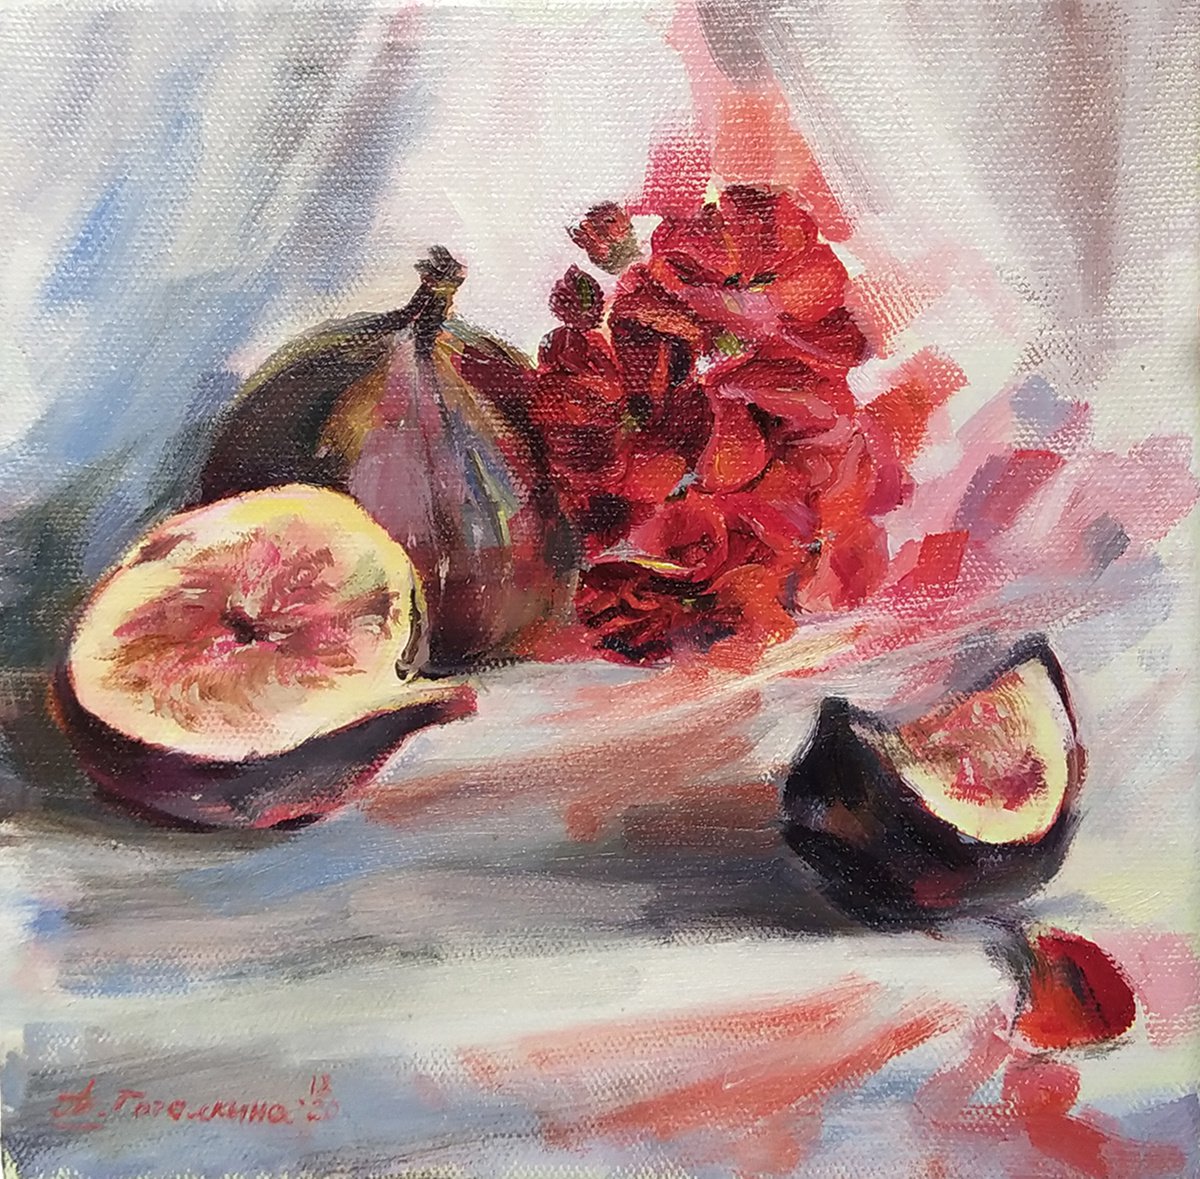 Still life with figs by Tatiana Gogolkina